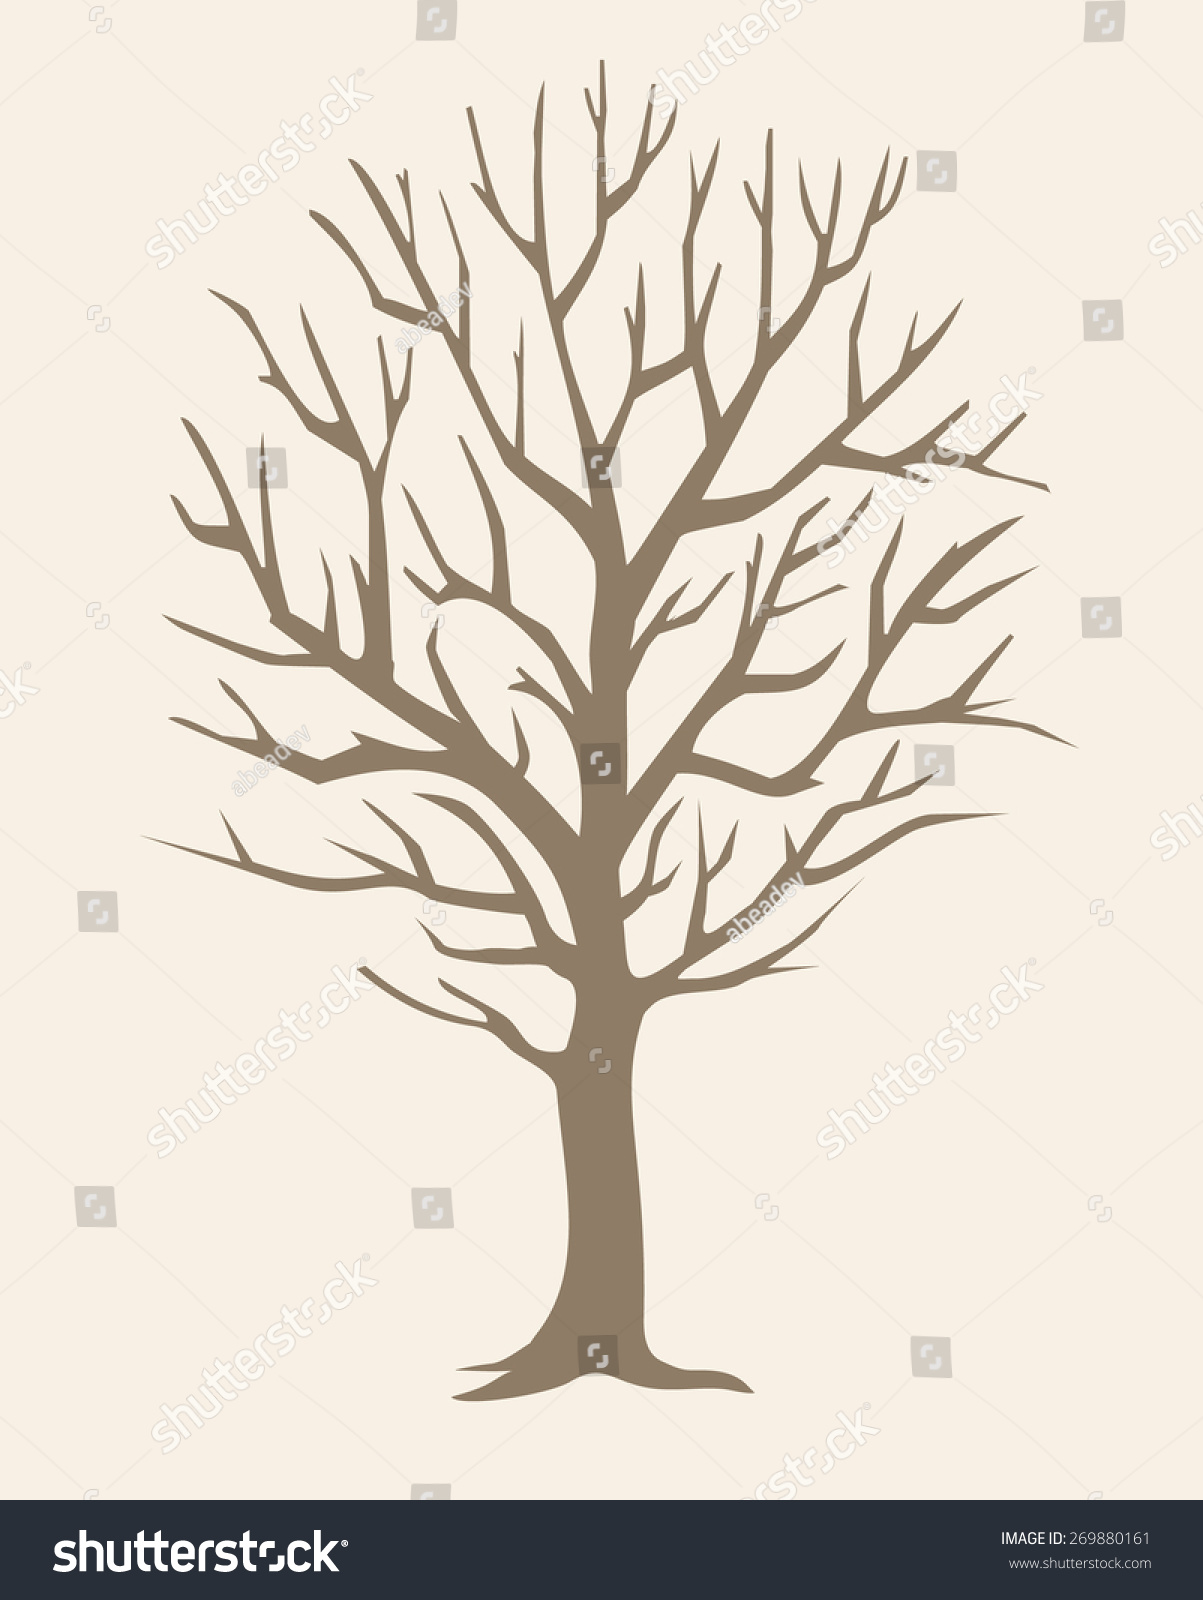 Download Winter Tree Stock Vector 269880161 : Shutterstock